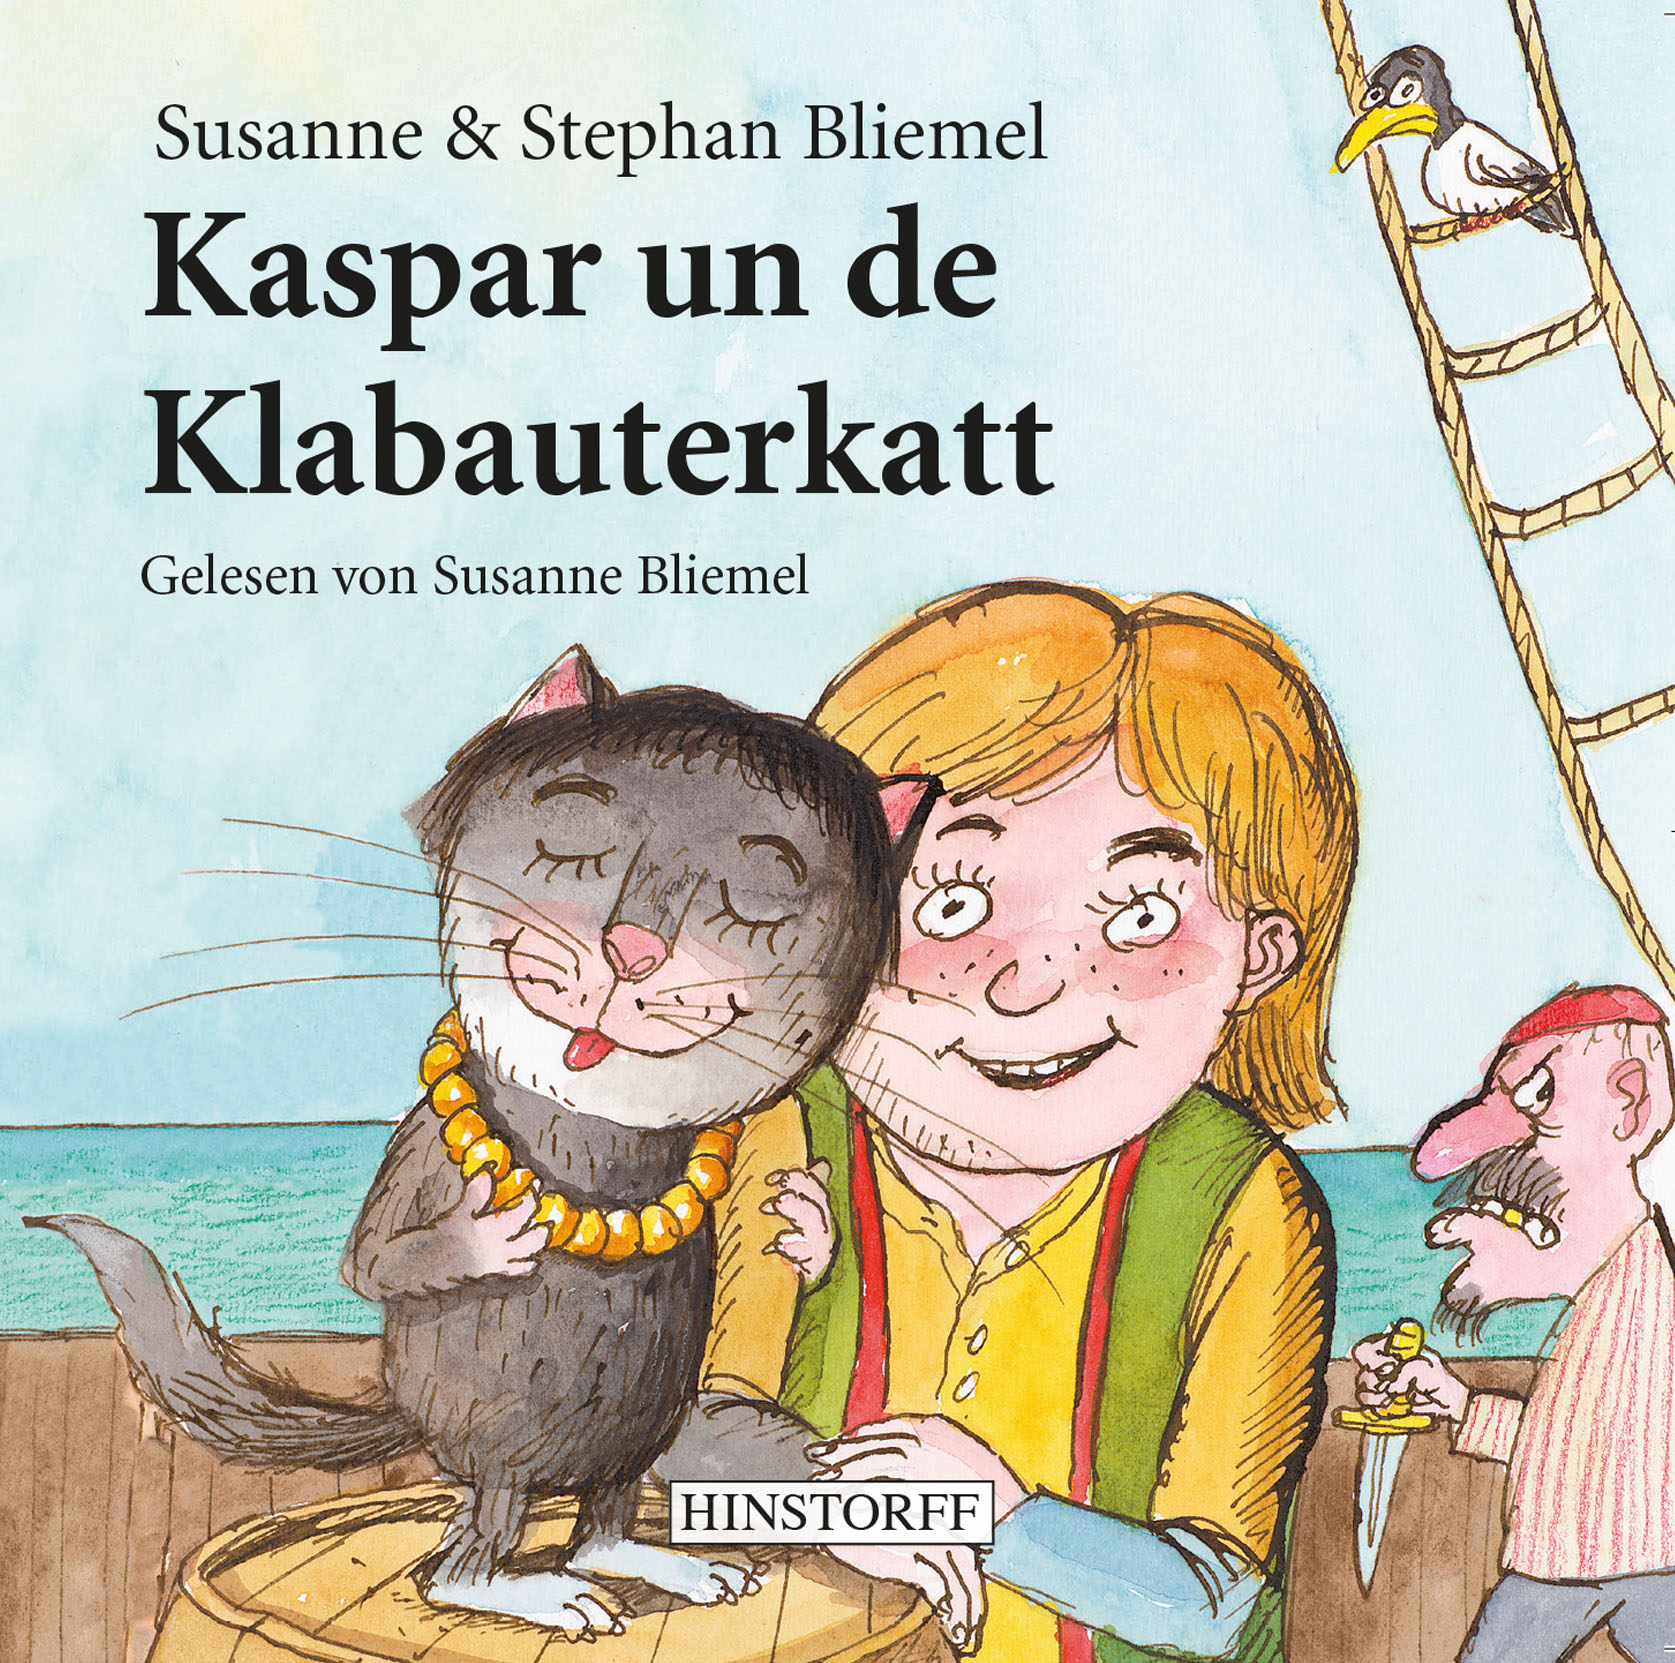 Kaspar und de Klabauerkatt. Hörbuch